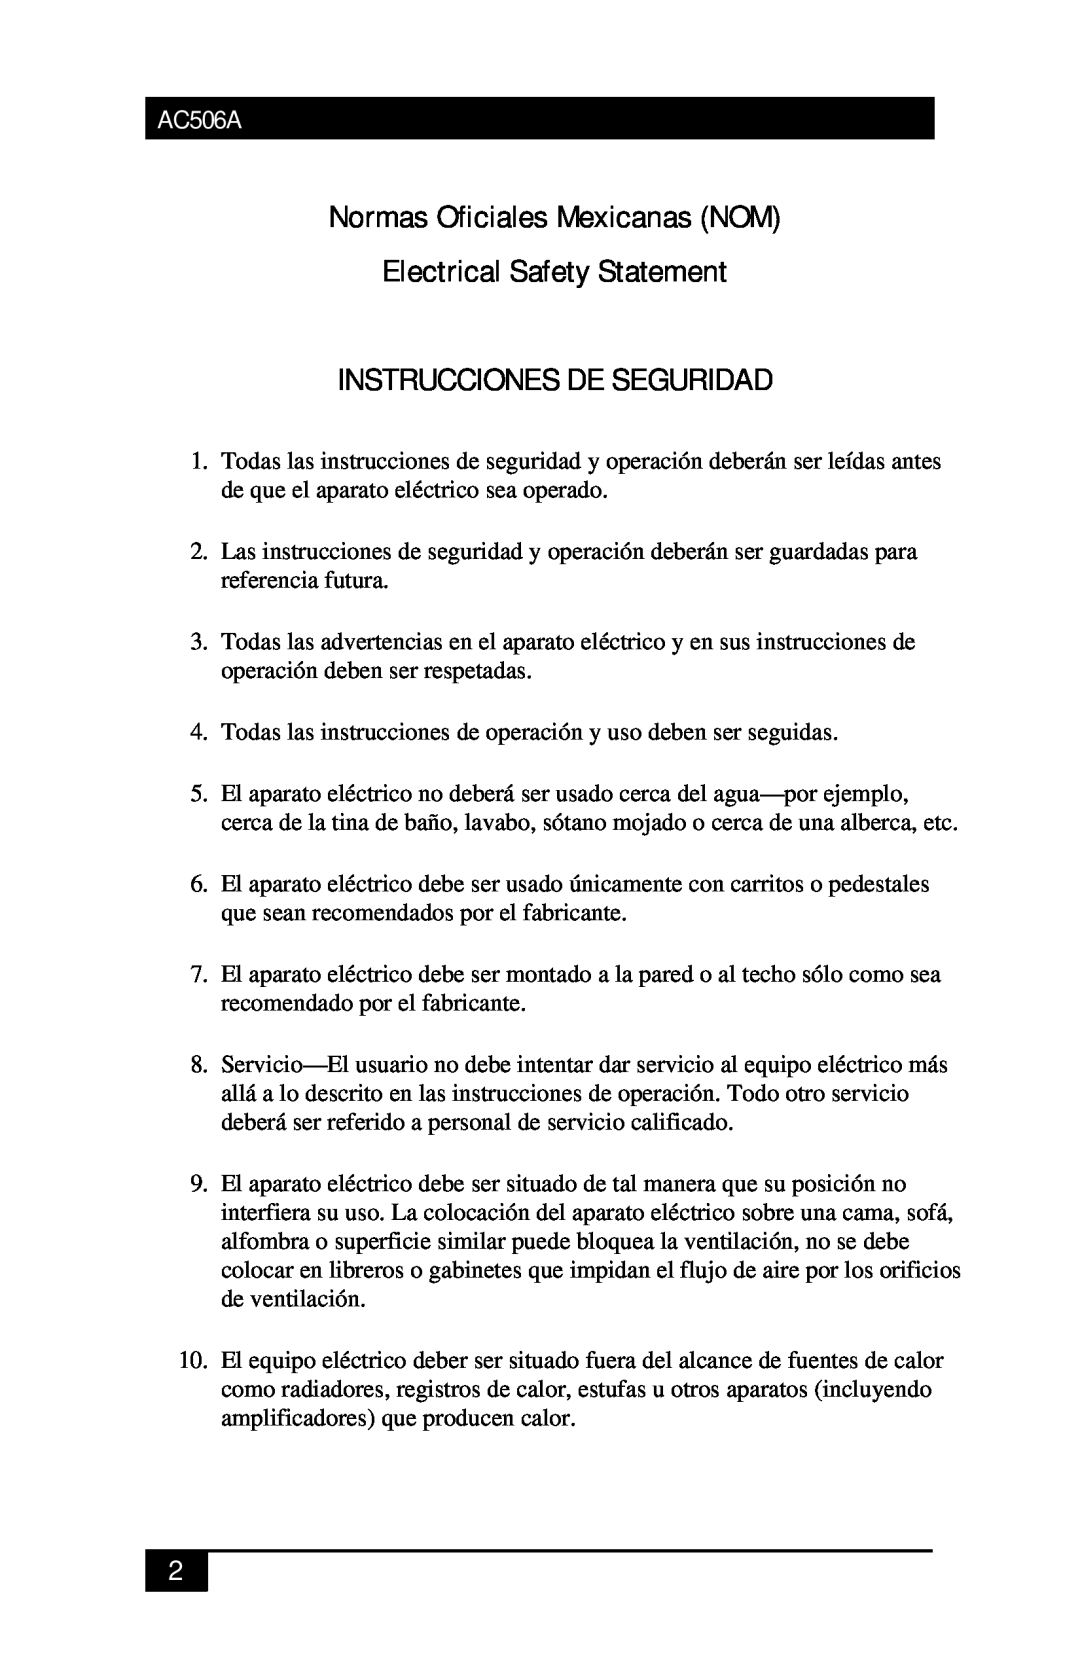 Black Box AC506A manual Normas Oficiales Mexicanas NOM Electrical Safety Statement, Instrucciones De Seguridad 